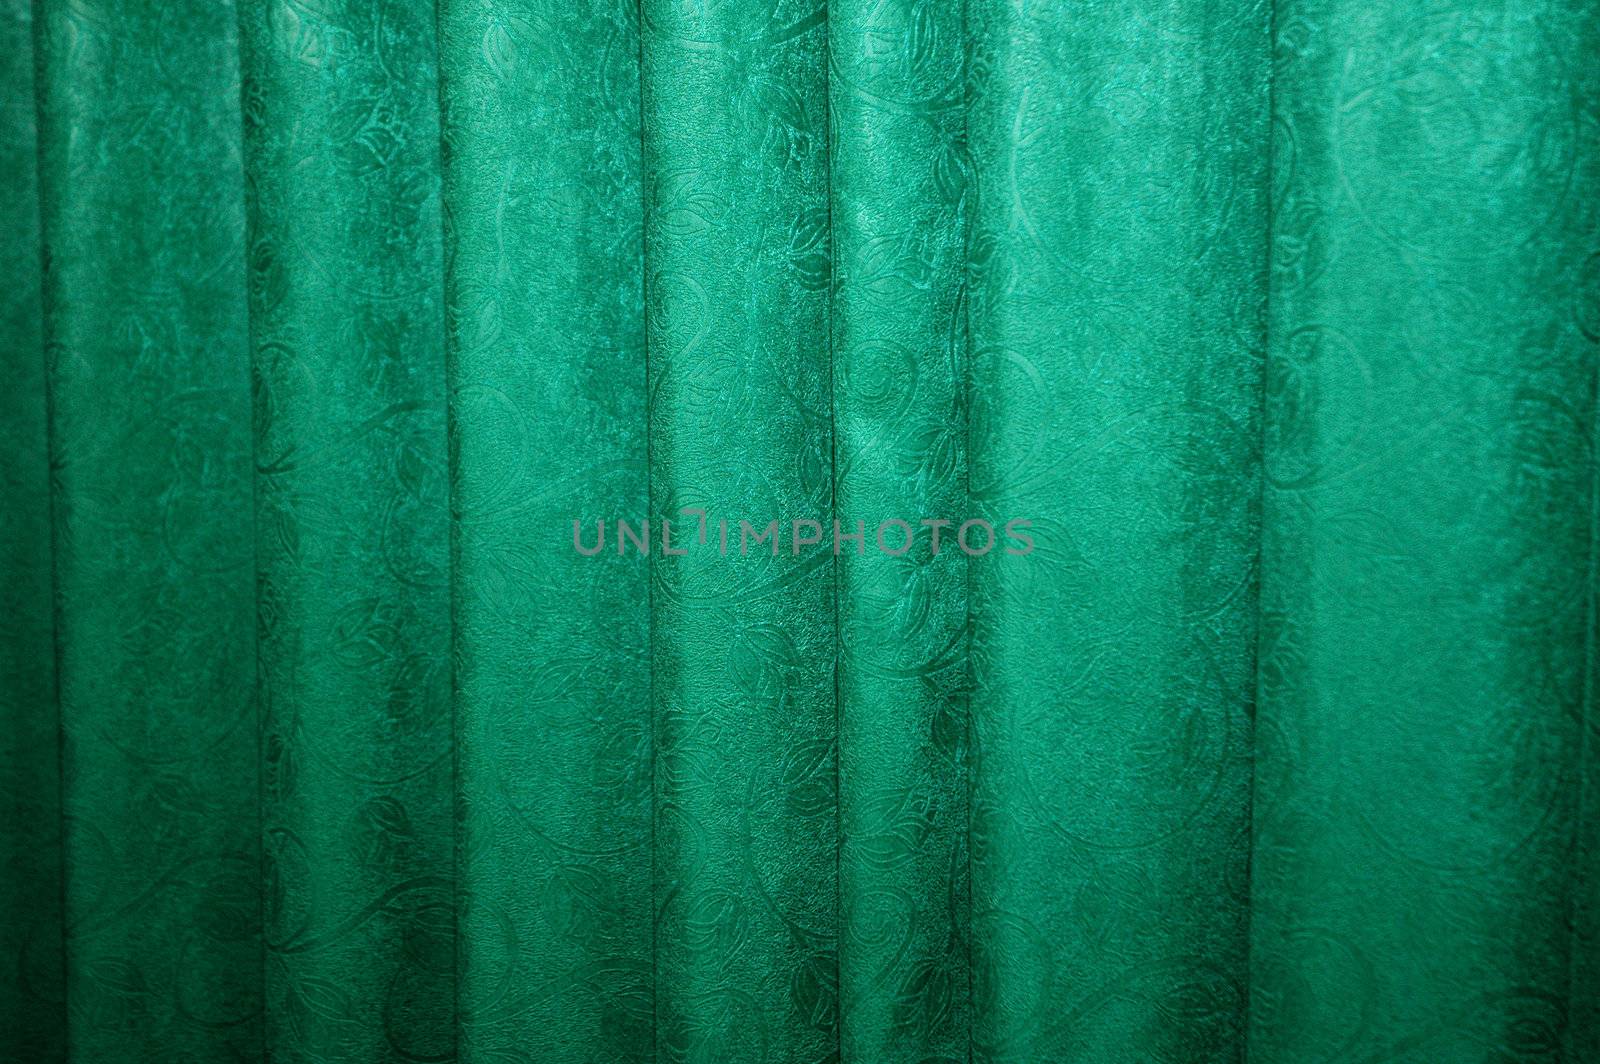 flower motif on a green curtain